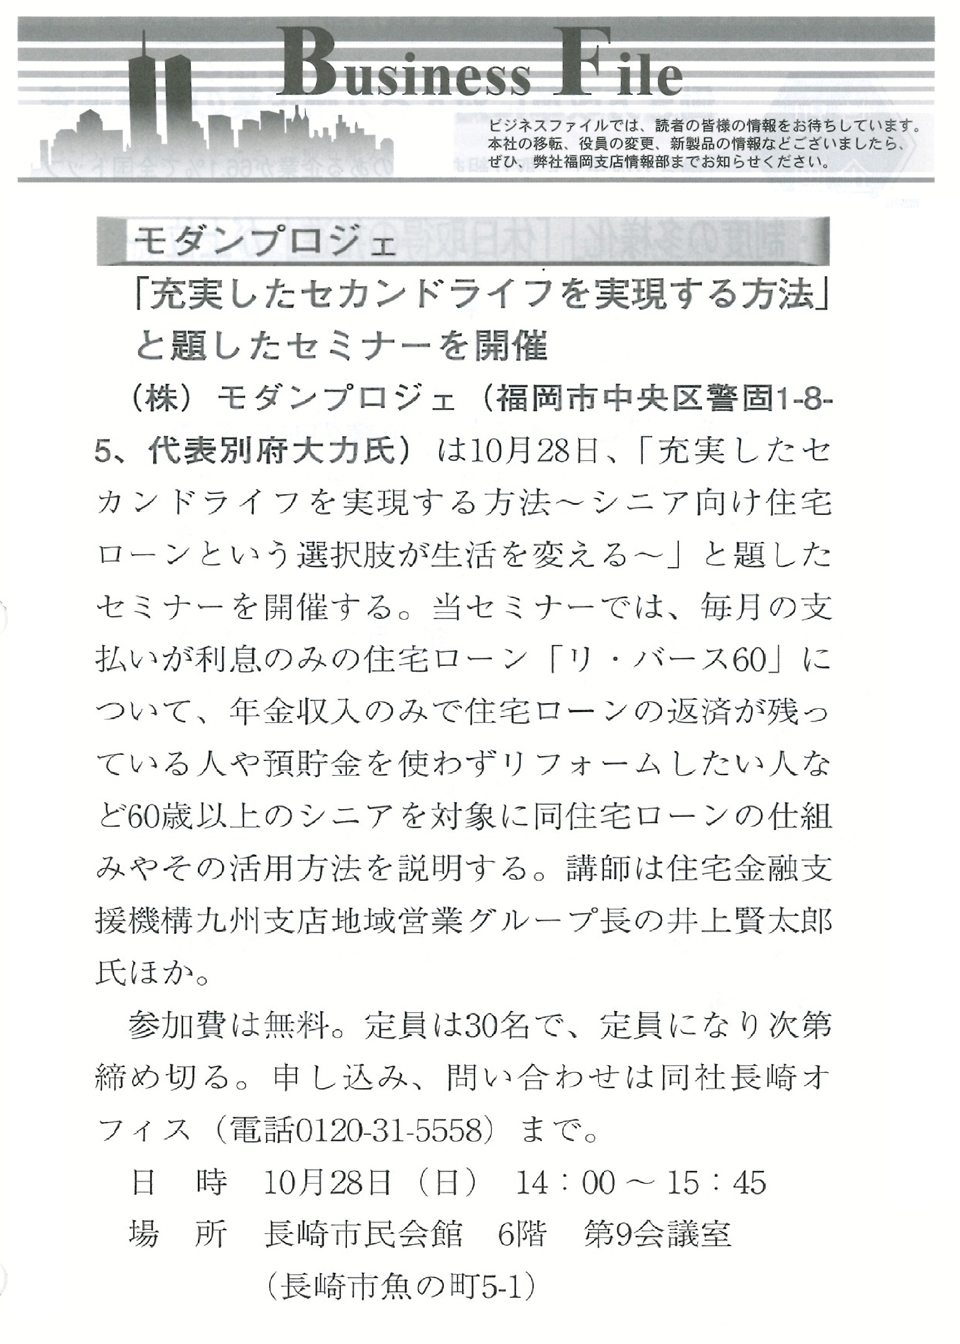 帝国データバンク「帝国ニュース九州版」に『充実したセカンドライフを実現する方法セミナー』について掲載されました。